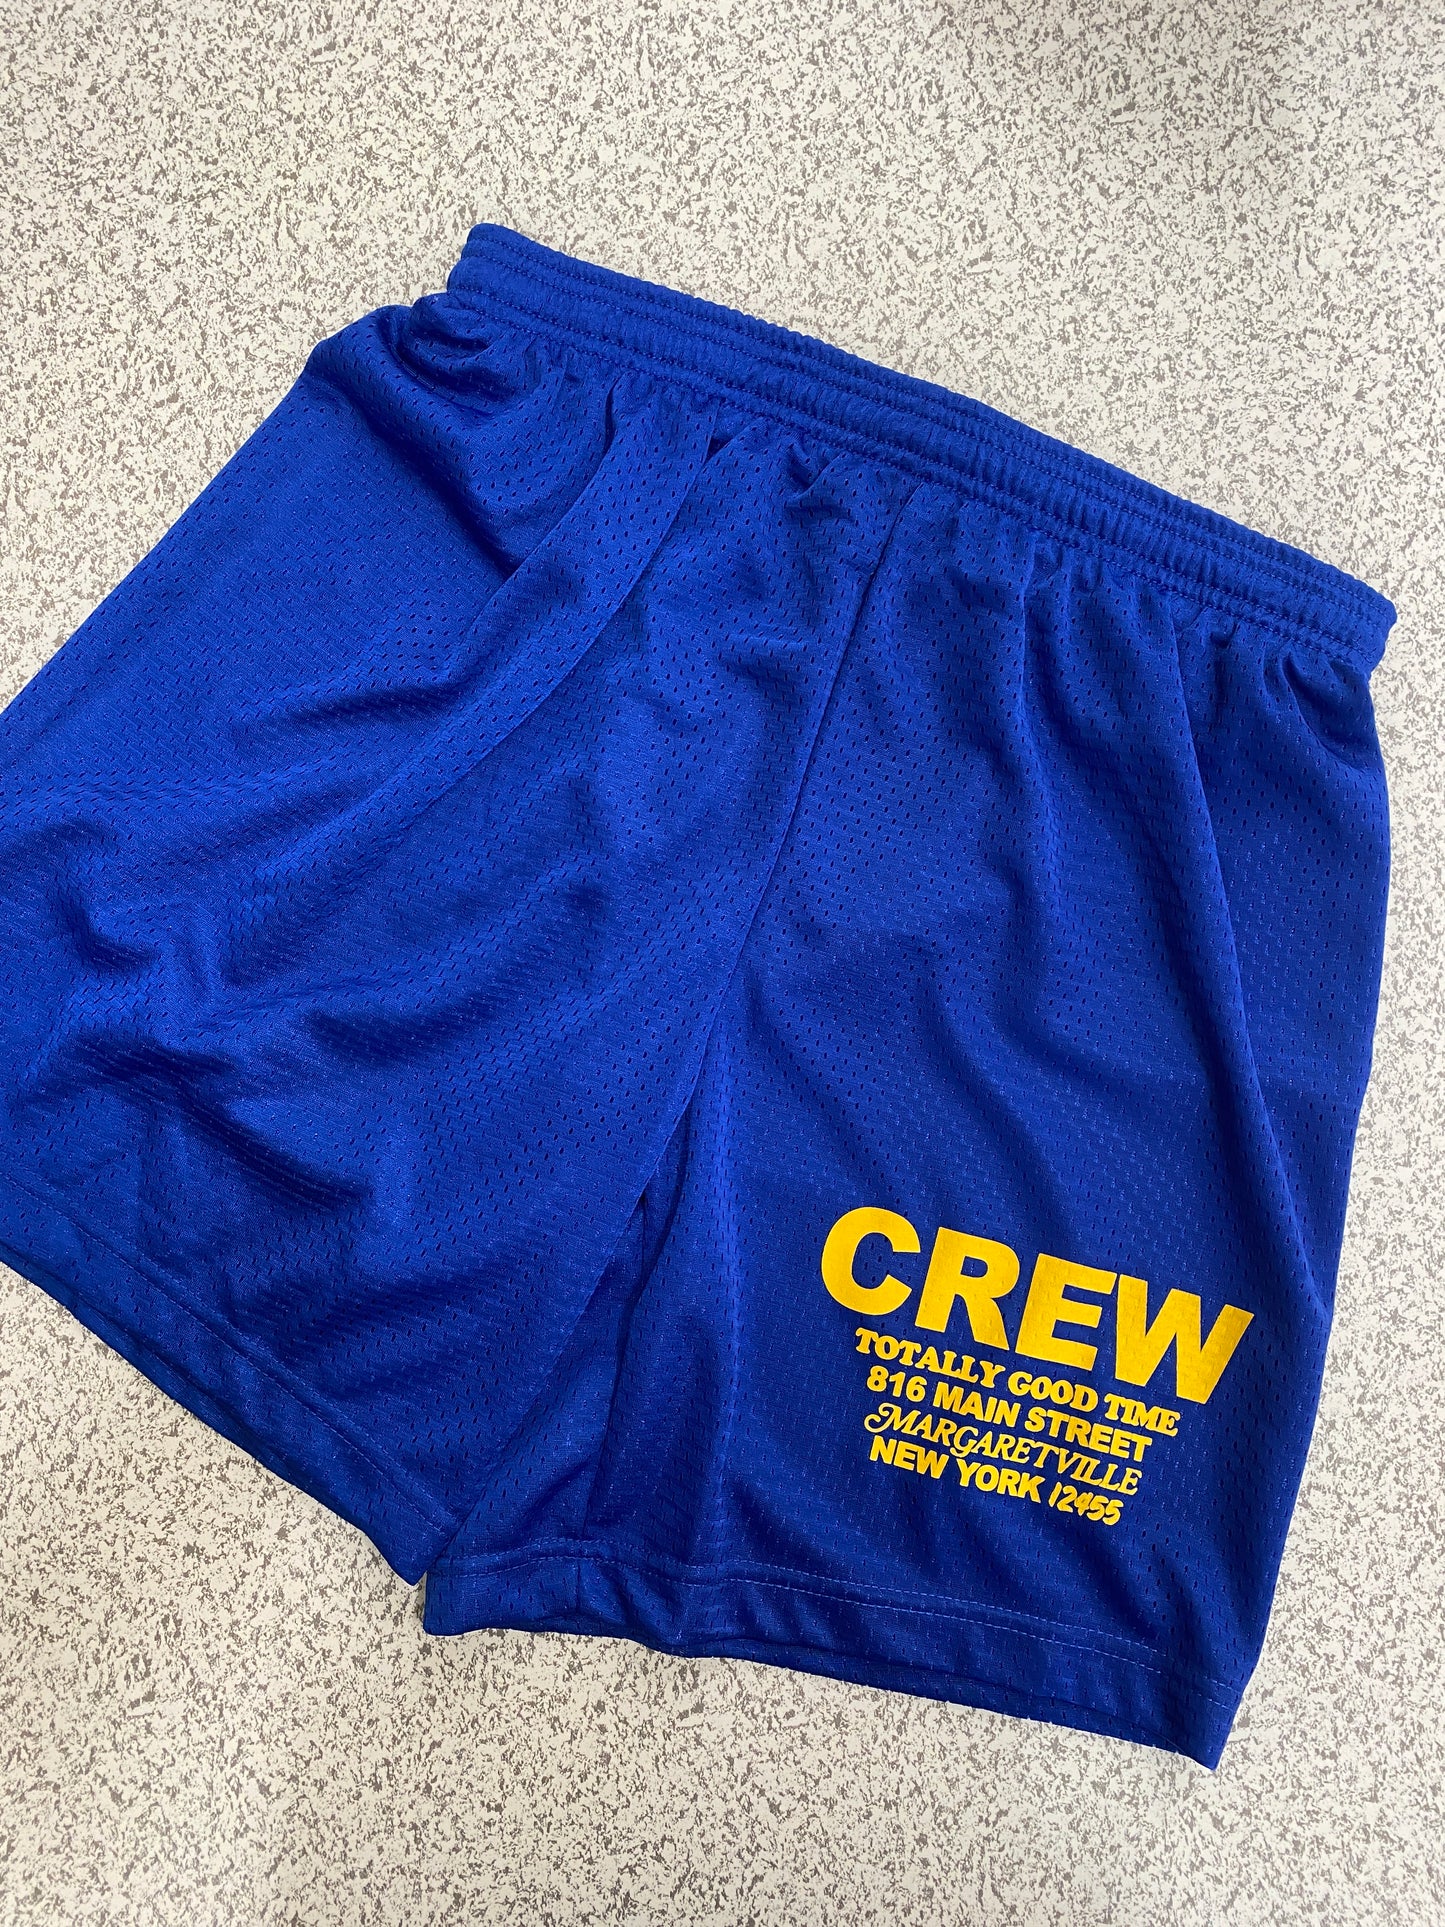 Crew Mesh Shorts